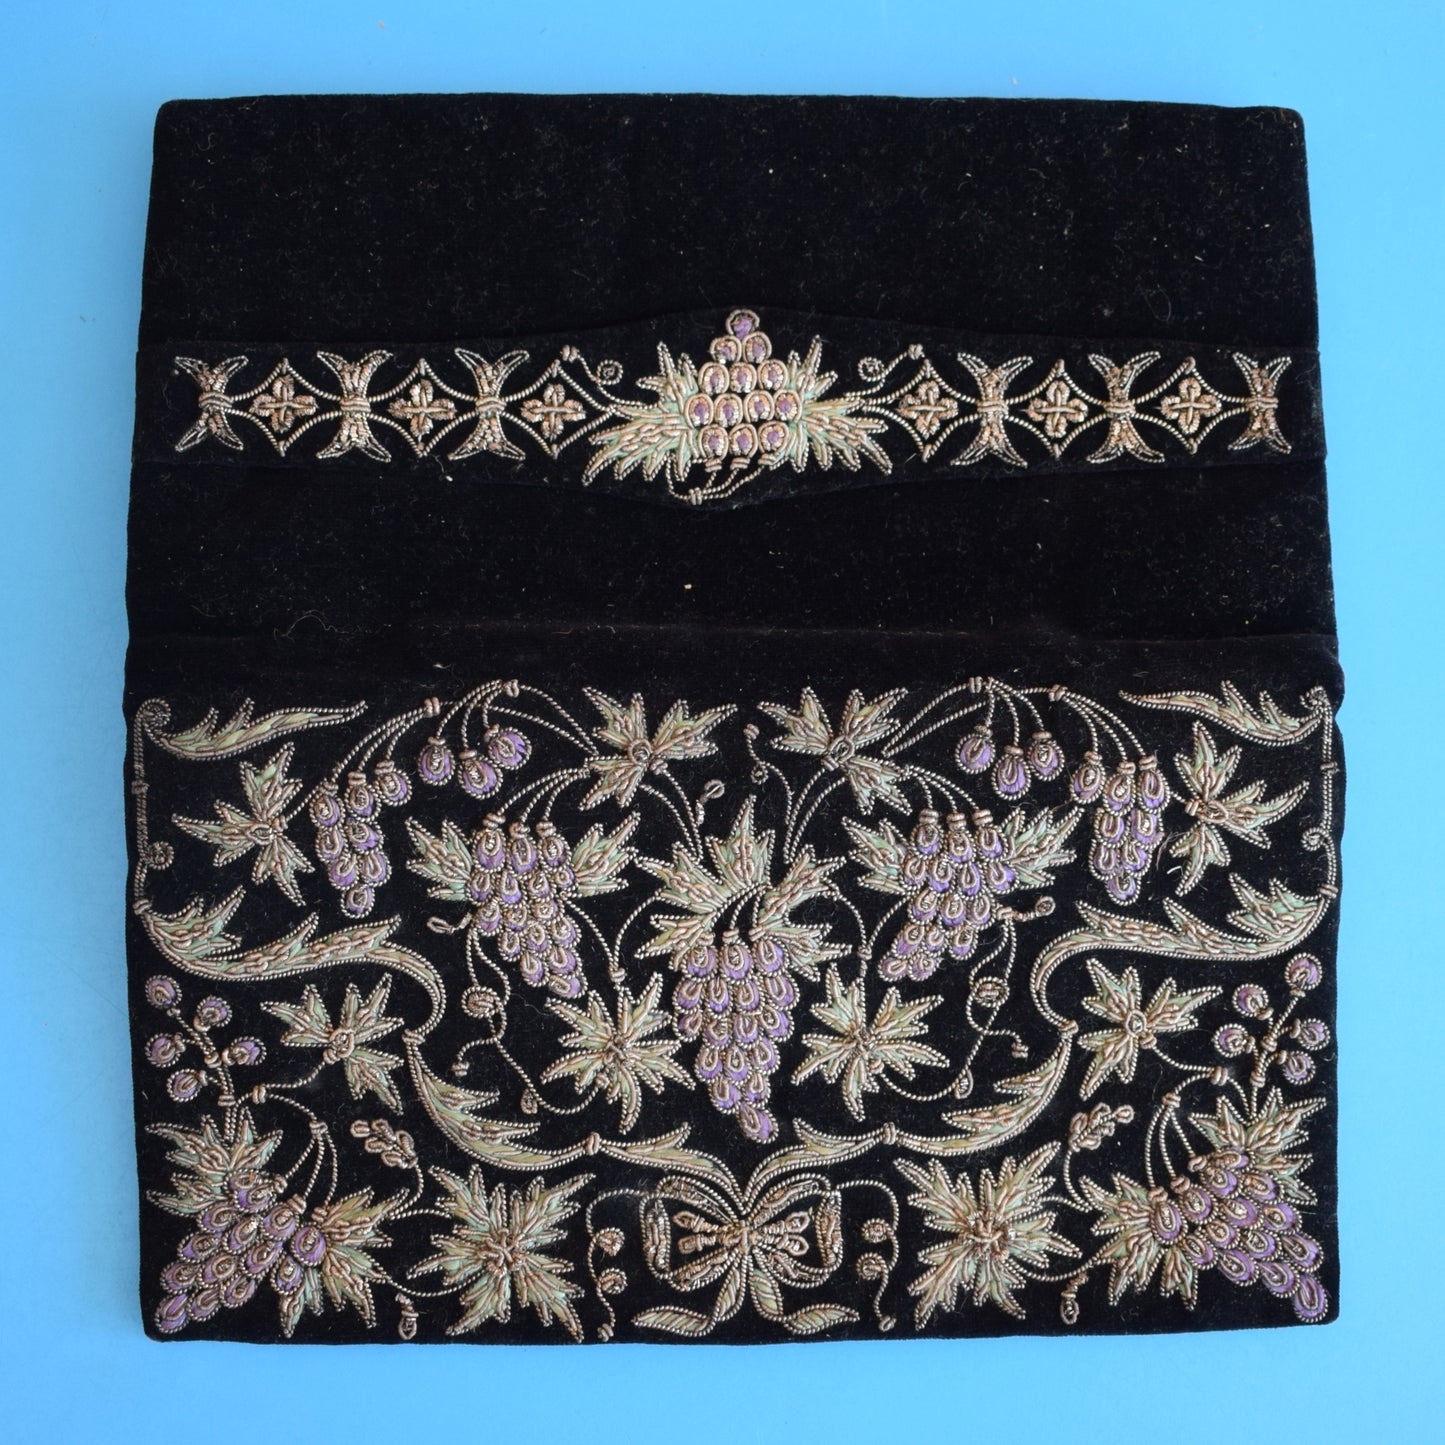 Vintage 1940s Embroidered Velvet Clutch Bag - Boxed